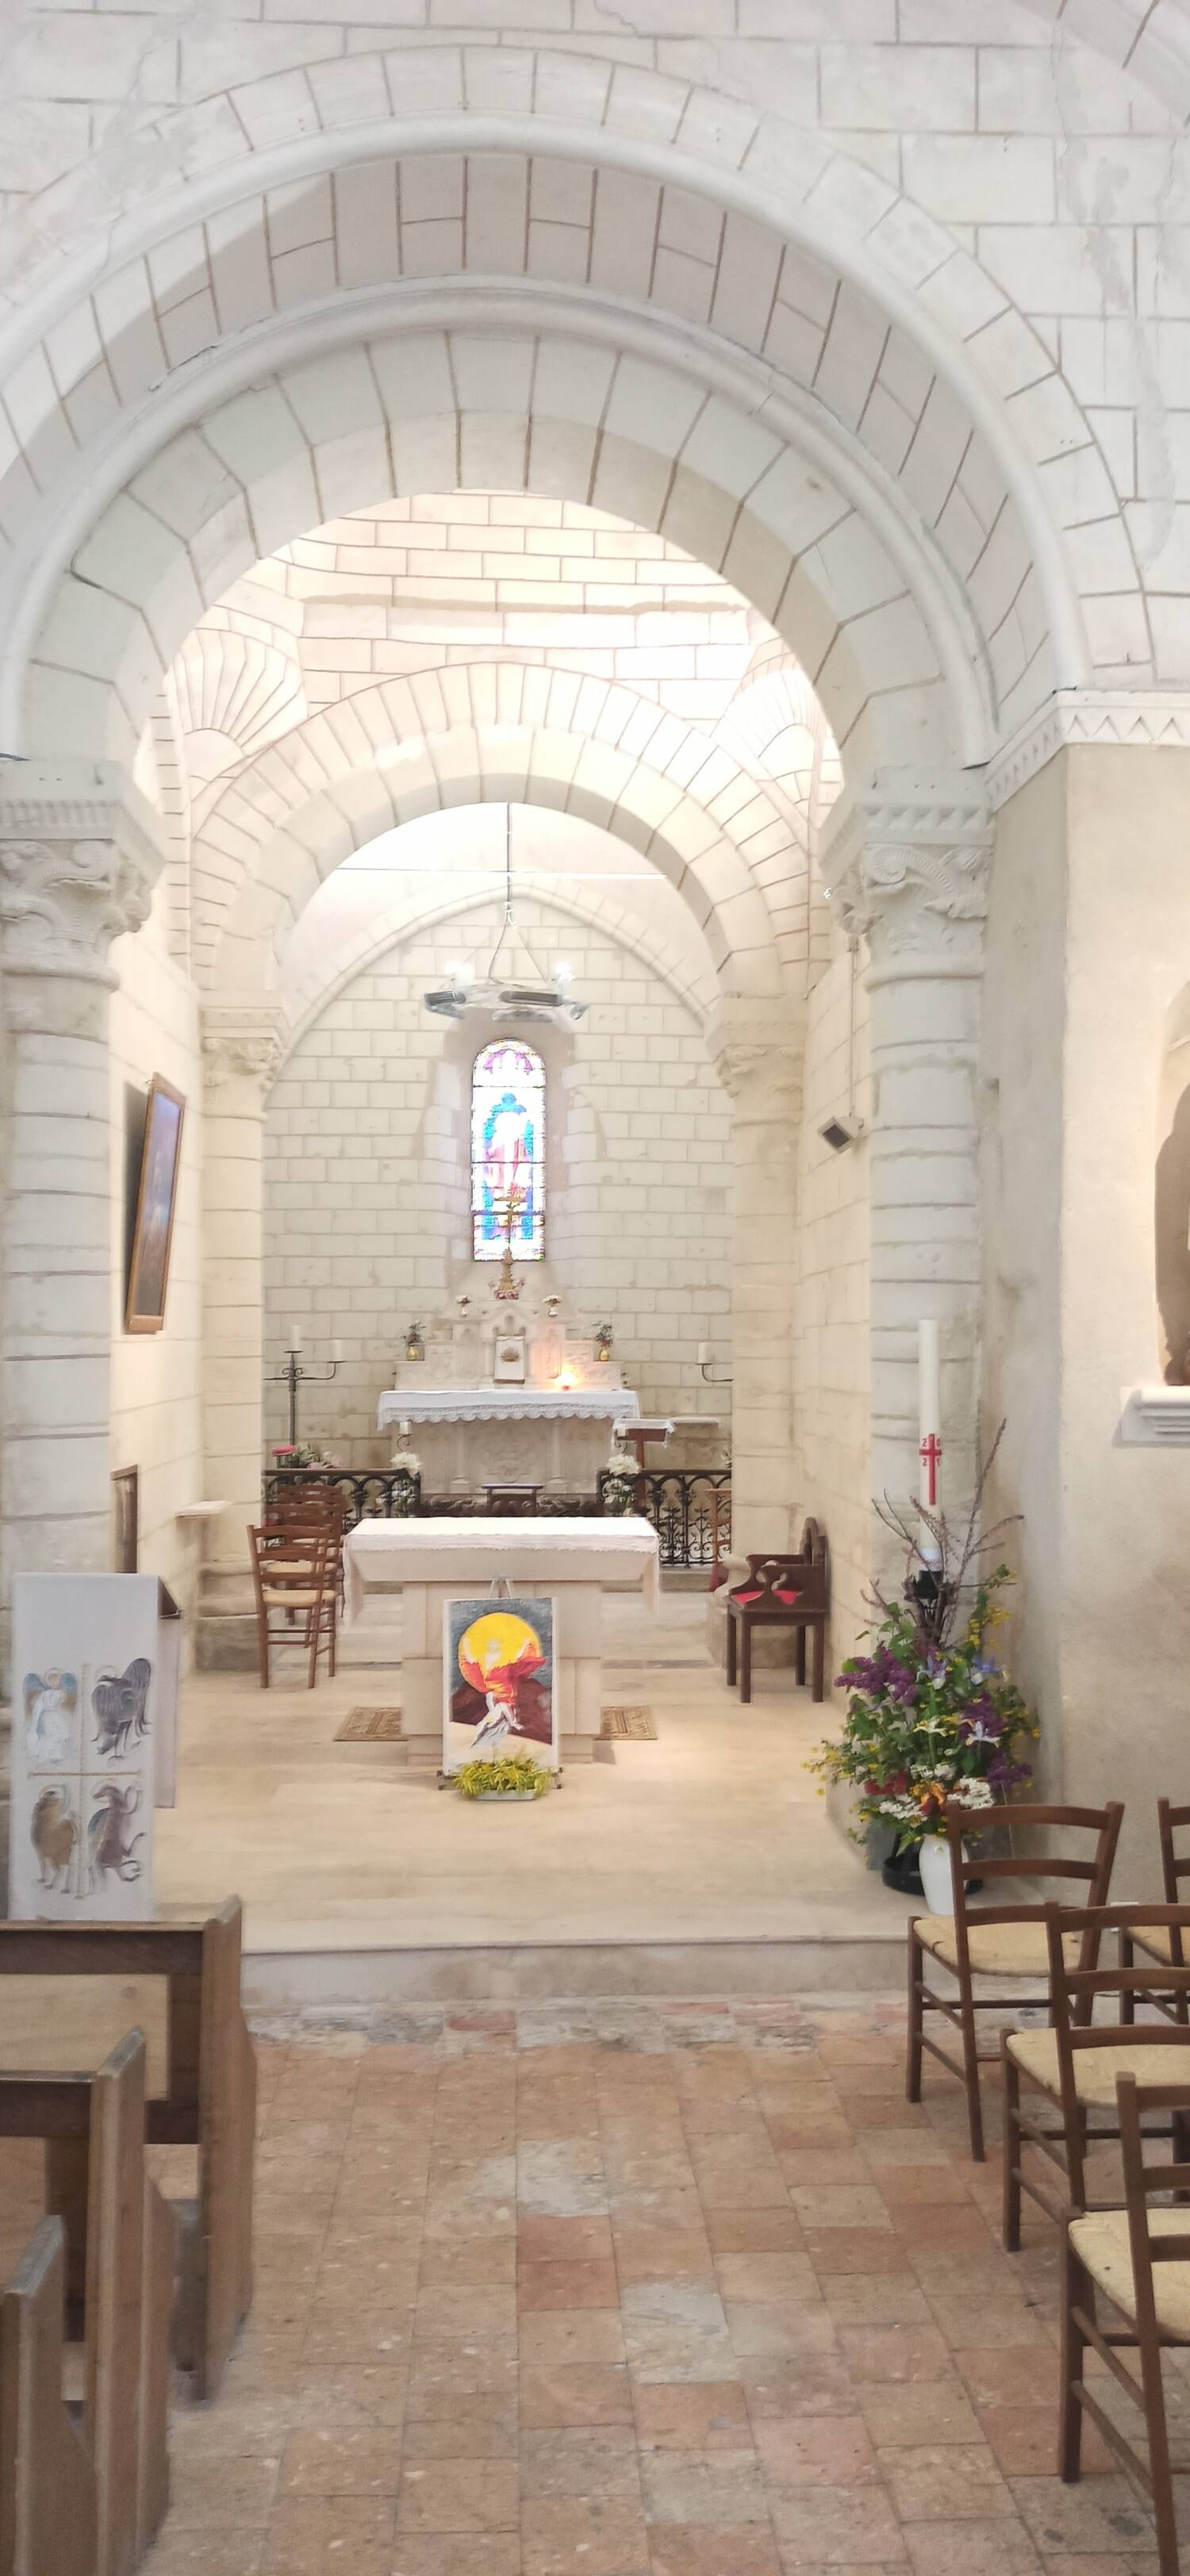 Usseau (86) - Église Saint-Hilaire